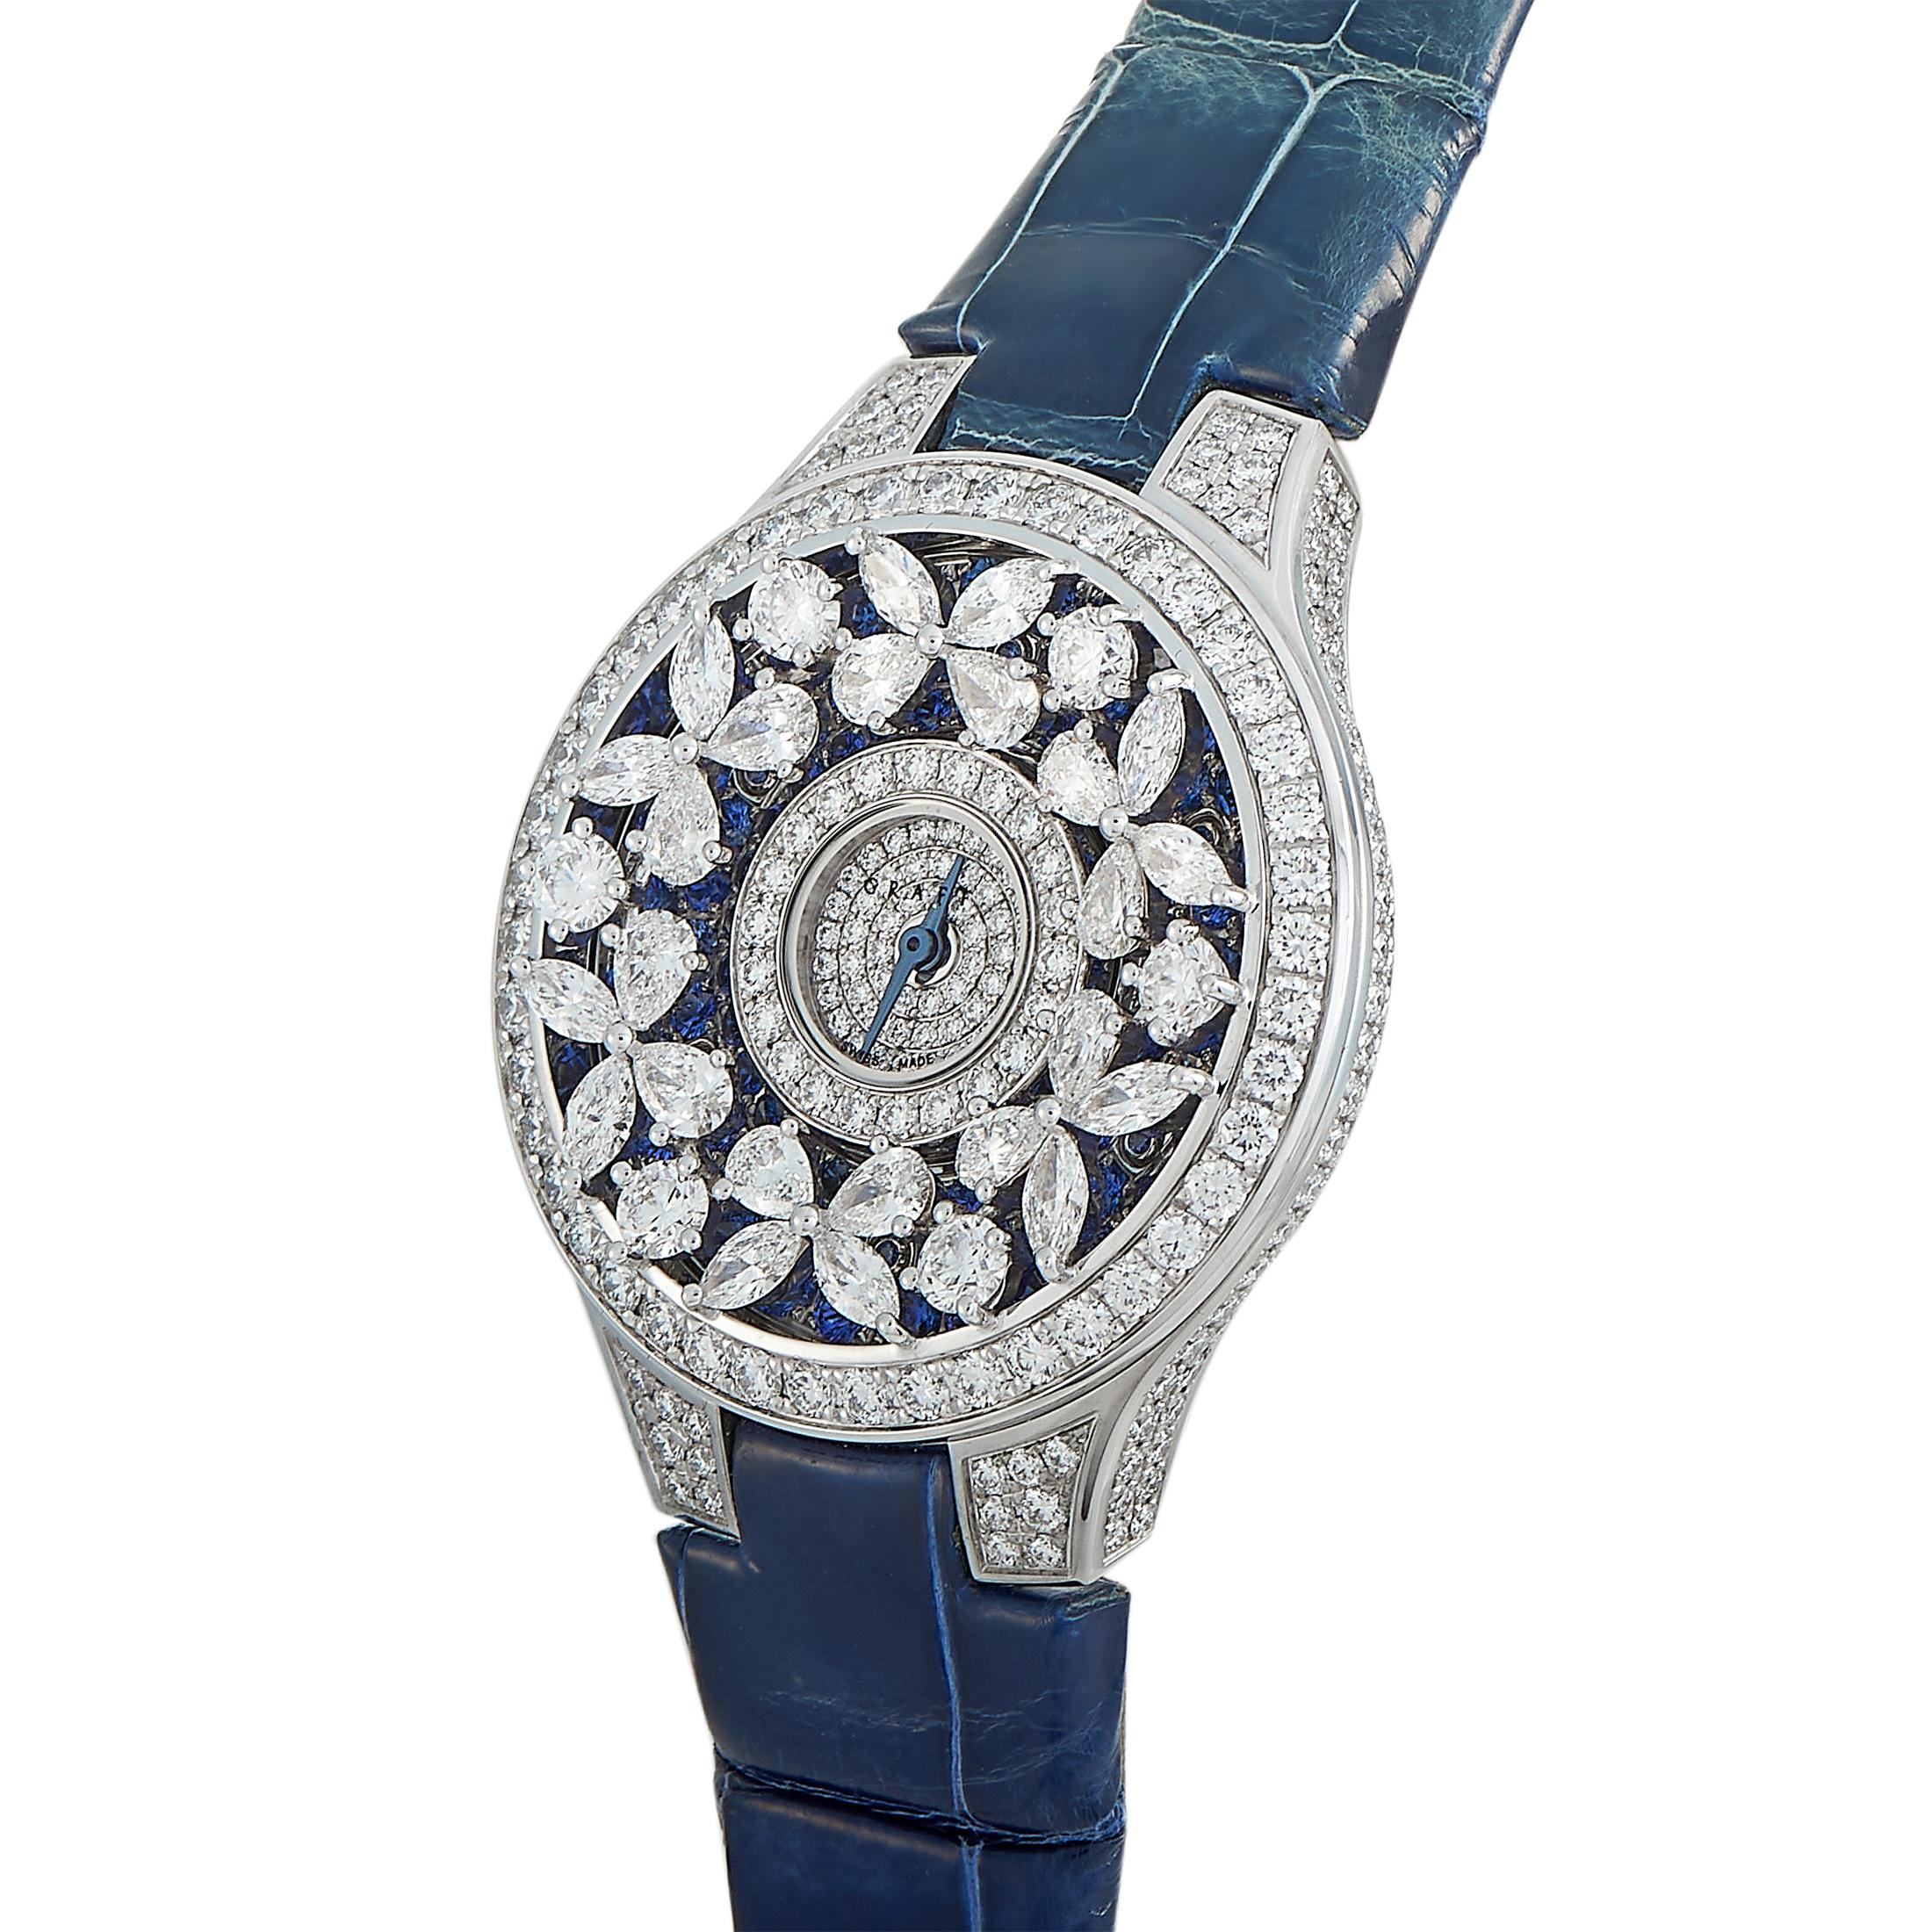 Dies ist die Graff Butterfly Uhr:: Referenznummer BF32WGDS. 

Sie wird mit einem diamantbesetzten Gehäuse aus 18 Karat Weißgold mit einem Durchmesser von 32 mm präsentiert. Das Gehäuse ist an einem blauen Lederband mit diamantbesetzter Dornschließe